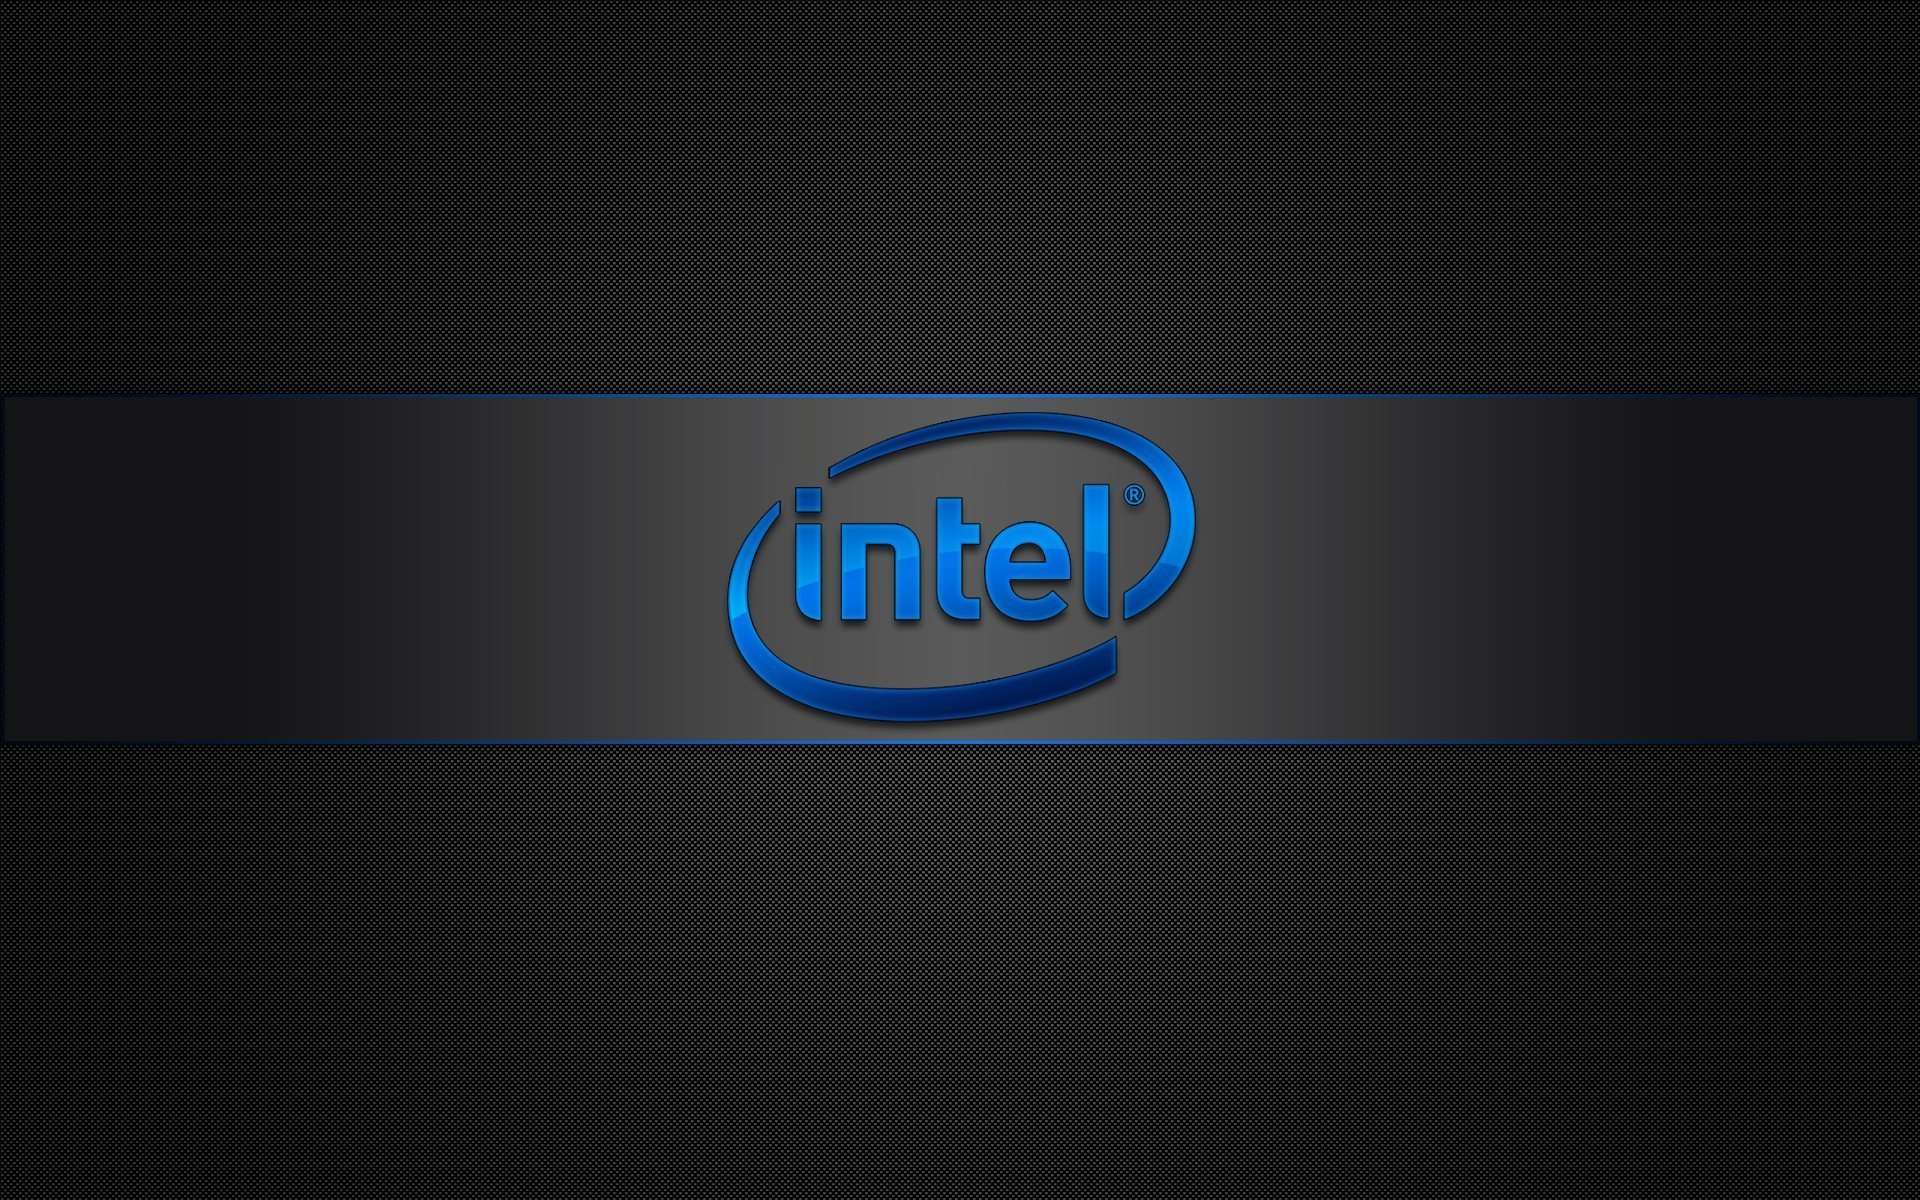 Intel Gaming Wallpaper Free Intel Gaming Background